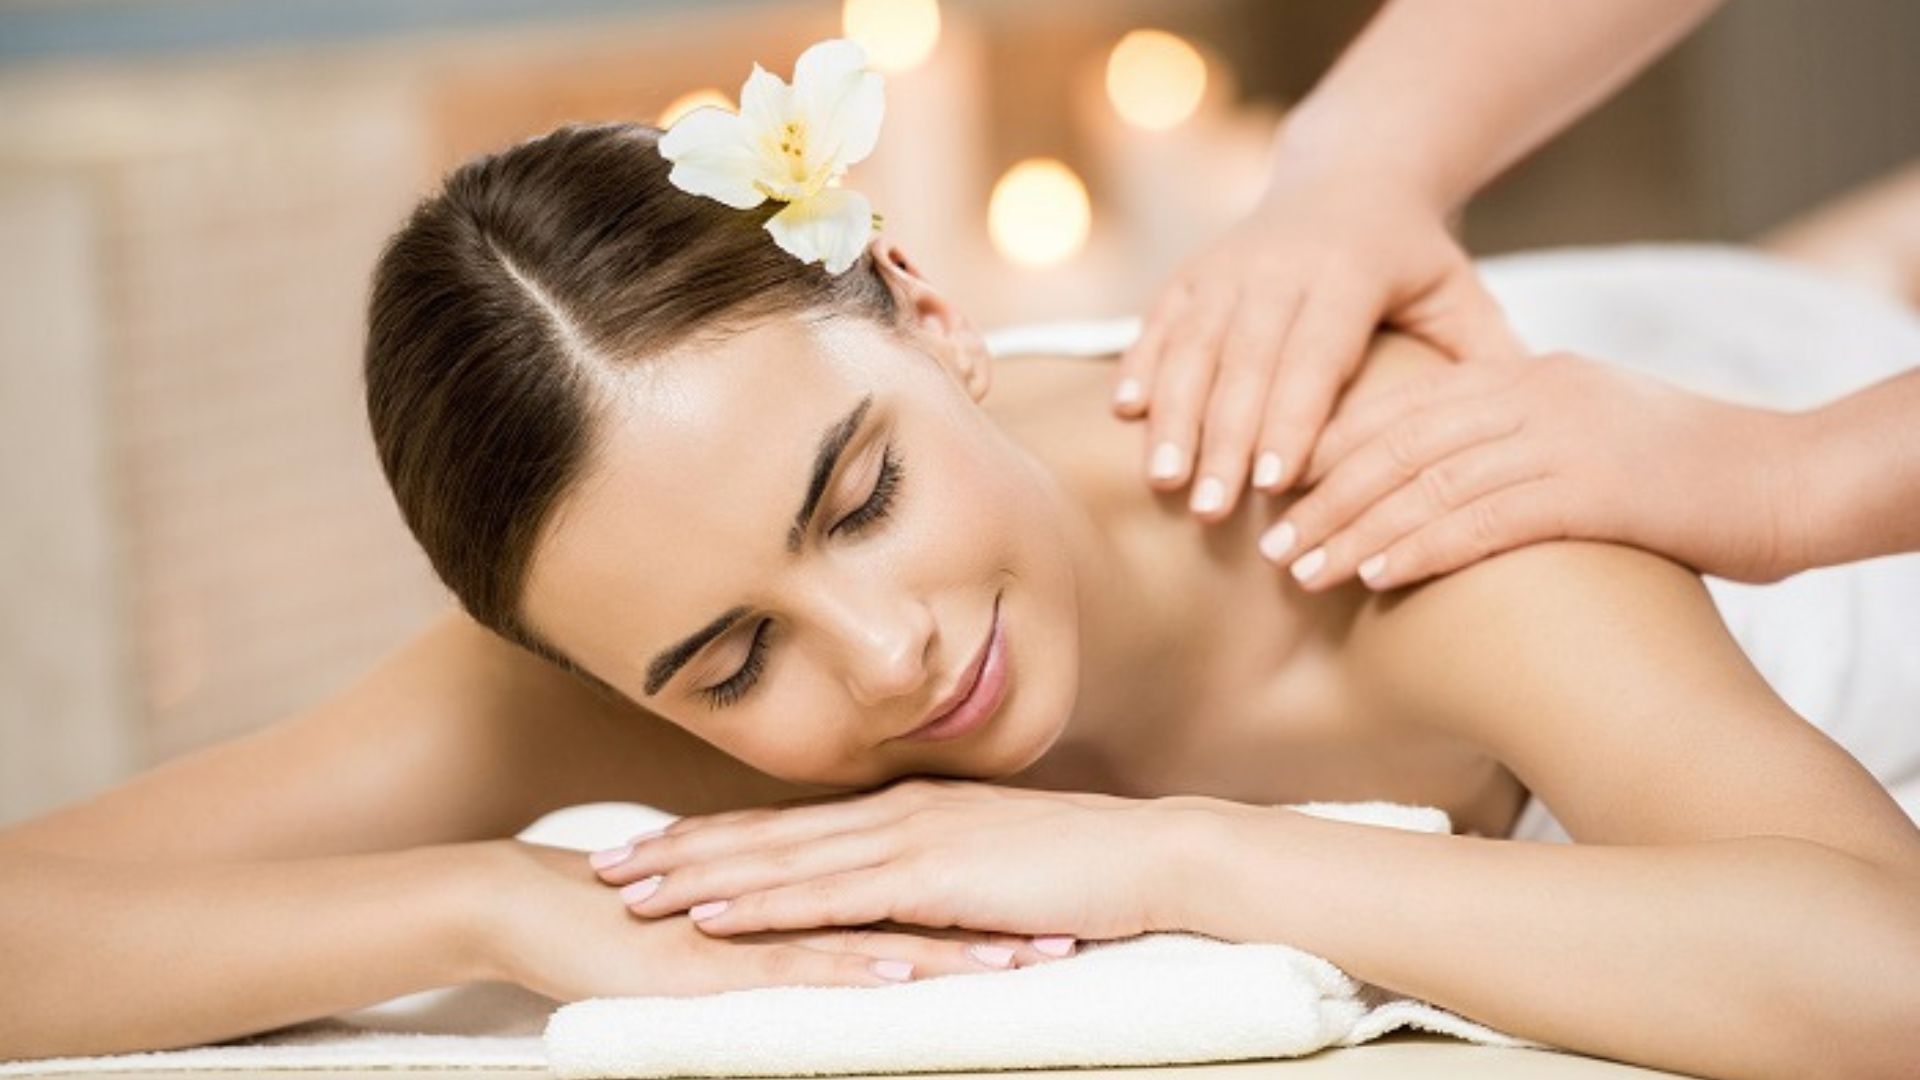 Mini Luxury Spa – Địa điểm massage giá rẻ tại Đà Nẵng bạn không nên bỏ lỡ